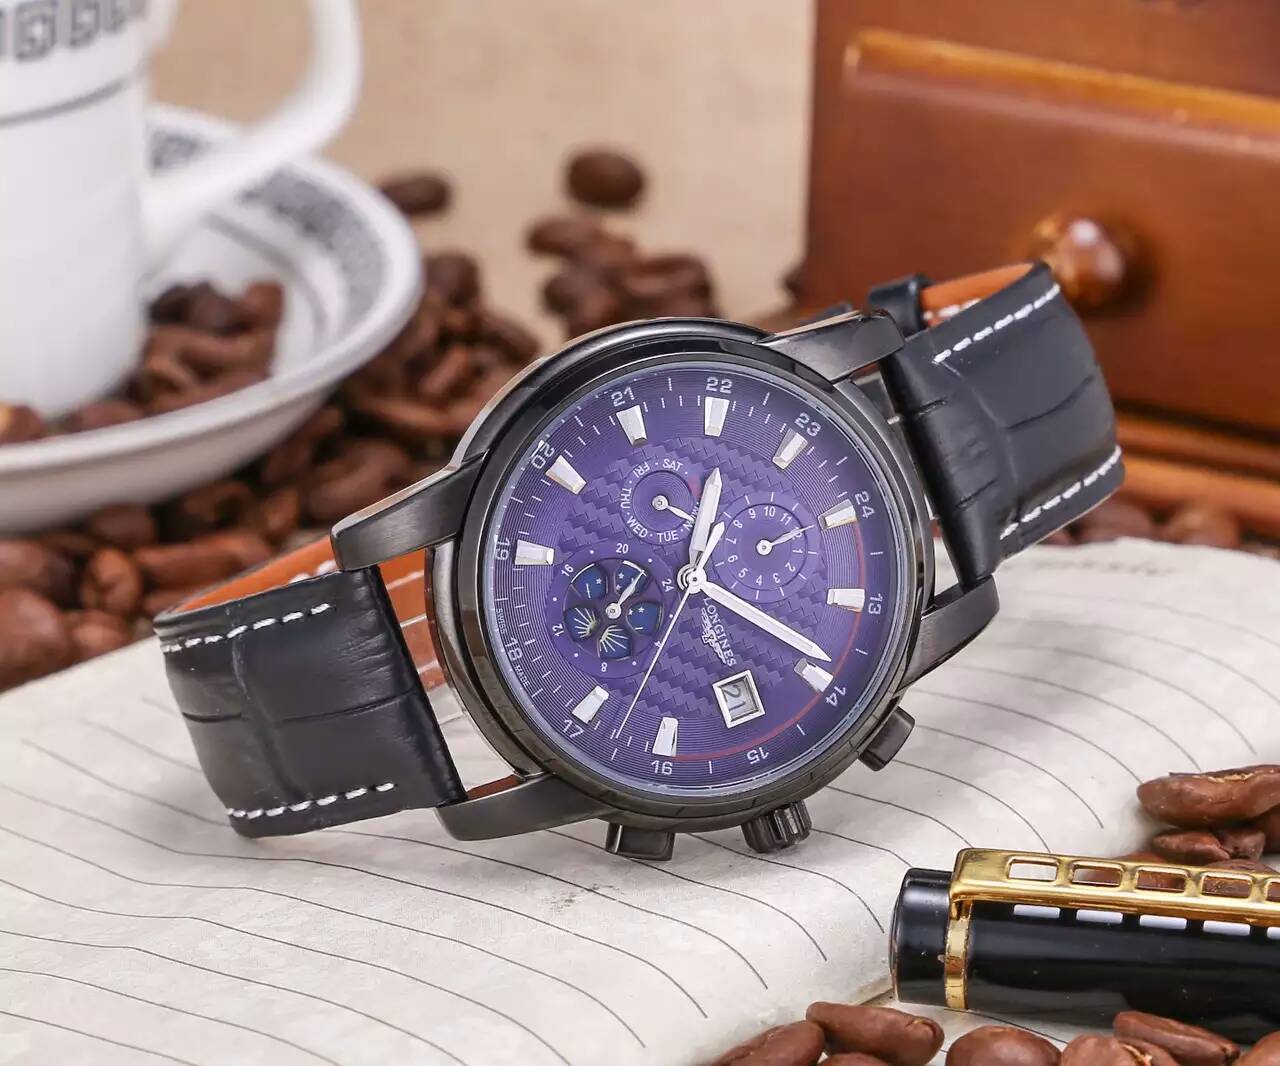 浪琴 頂級機械機芯 藍寶石水晶鏡面 真牛皮錶帶 316精鋼 精品男士腕錶 精致品質 大方風范-rhid-116940